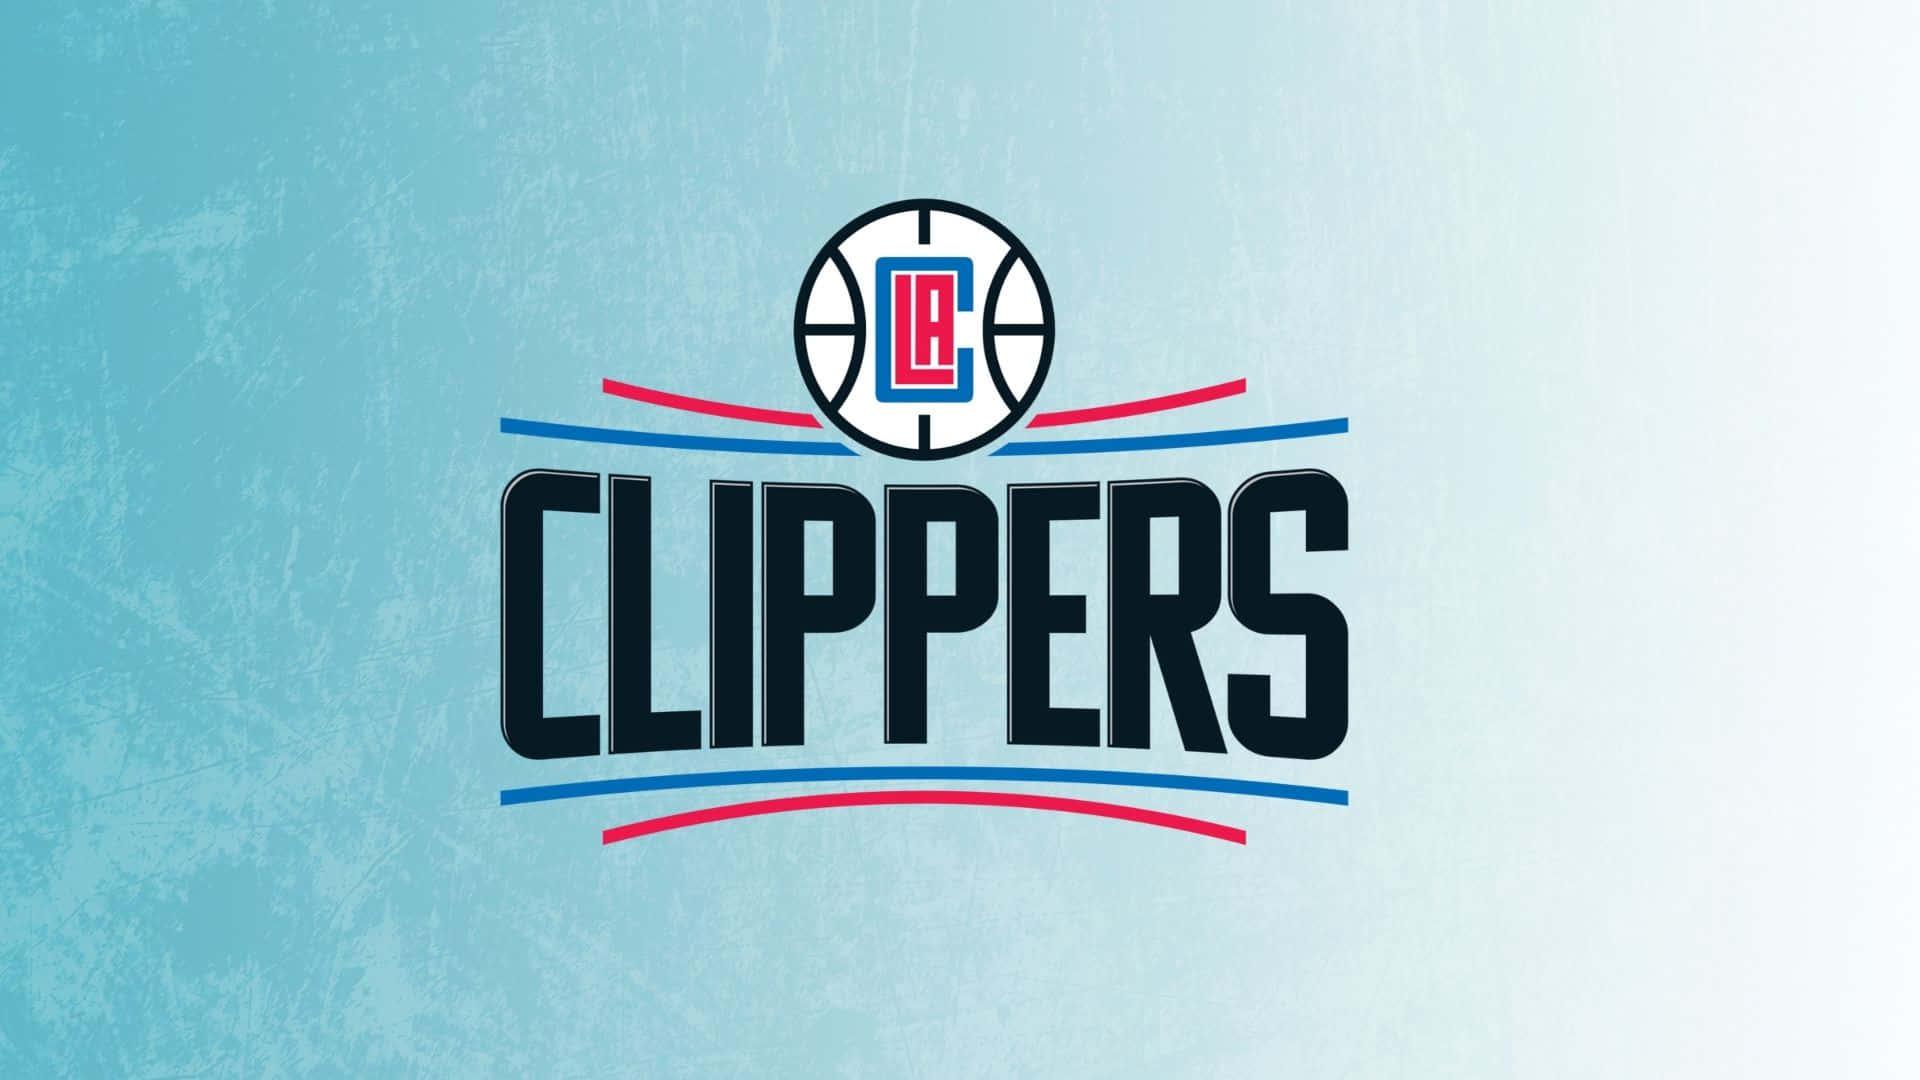 Feiernsie Den Erfolg Der La Clippers. Wallpaper